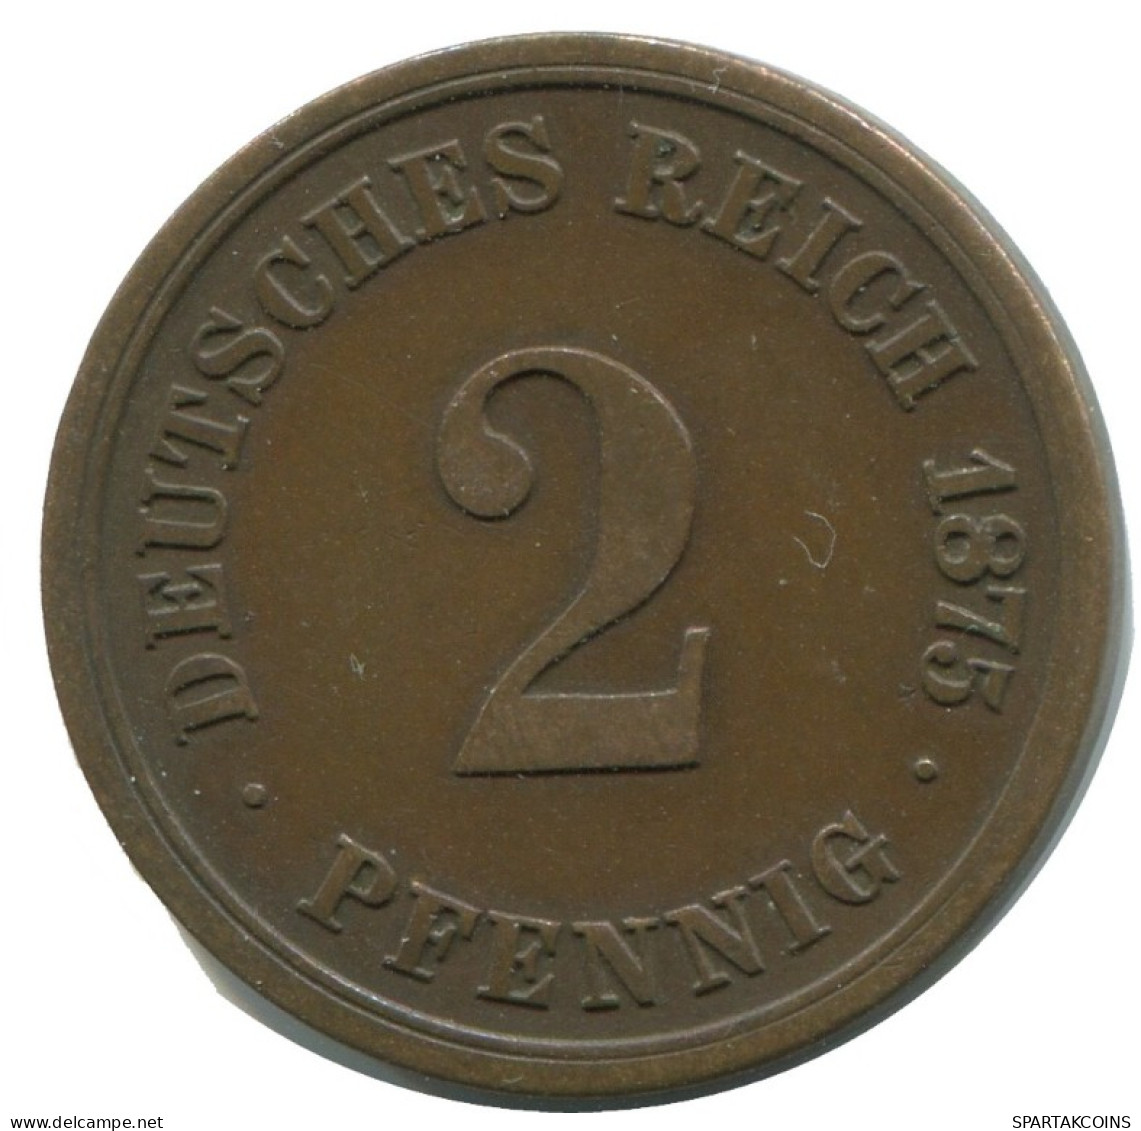 2 PFENNIG 1875 A GERMANY Coin #AD474.9.D.A - 5 Pfennig